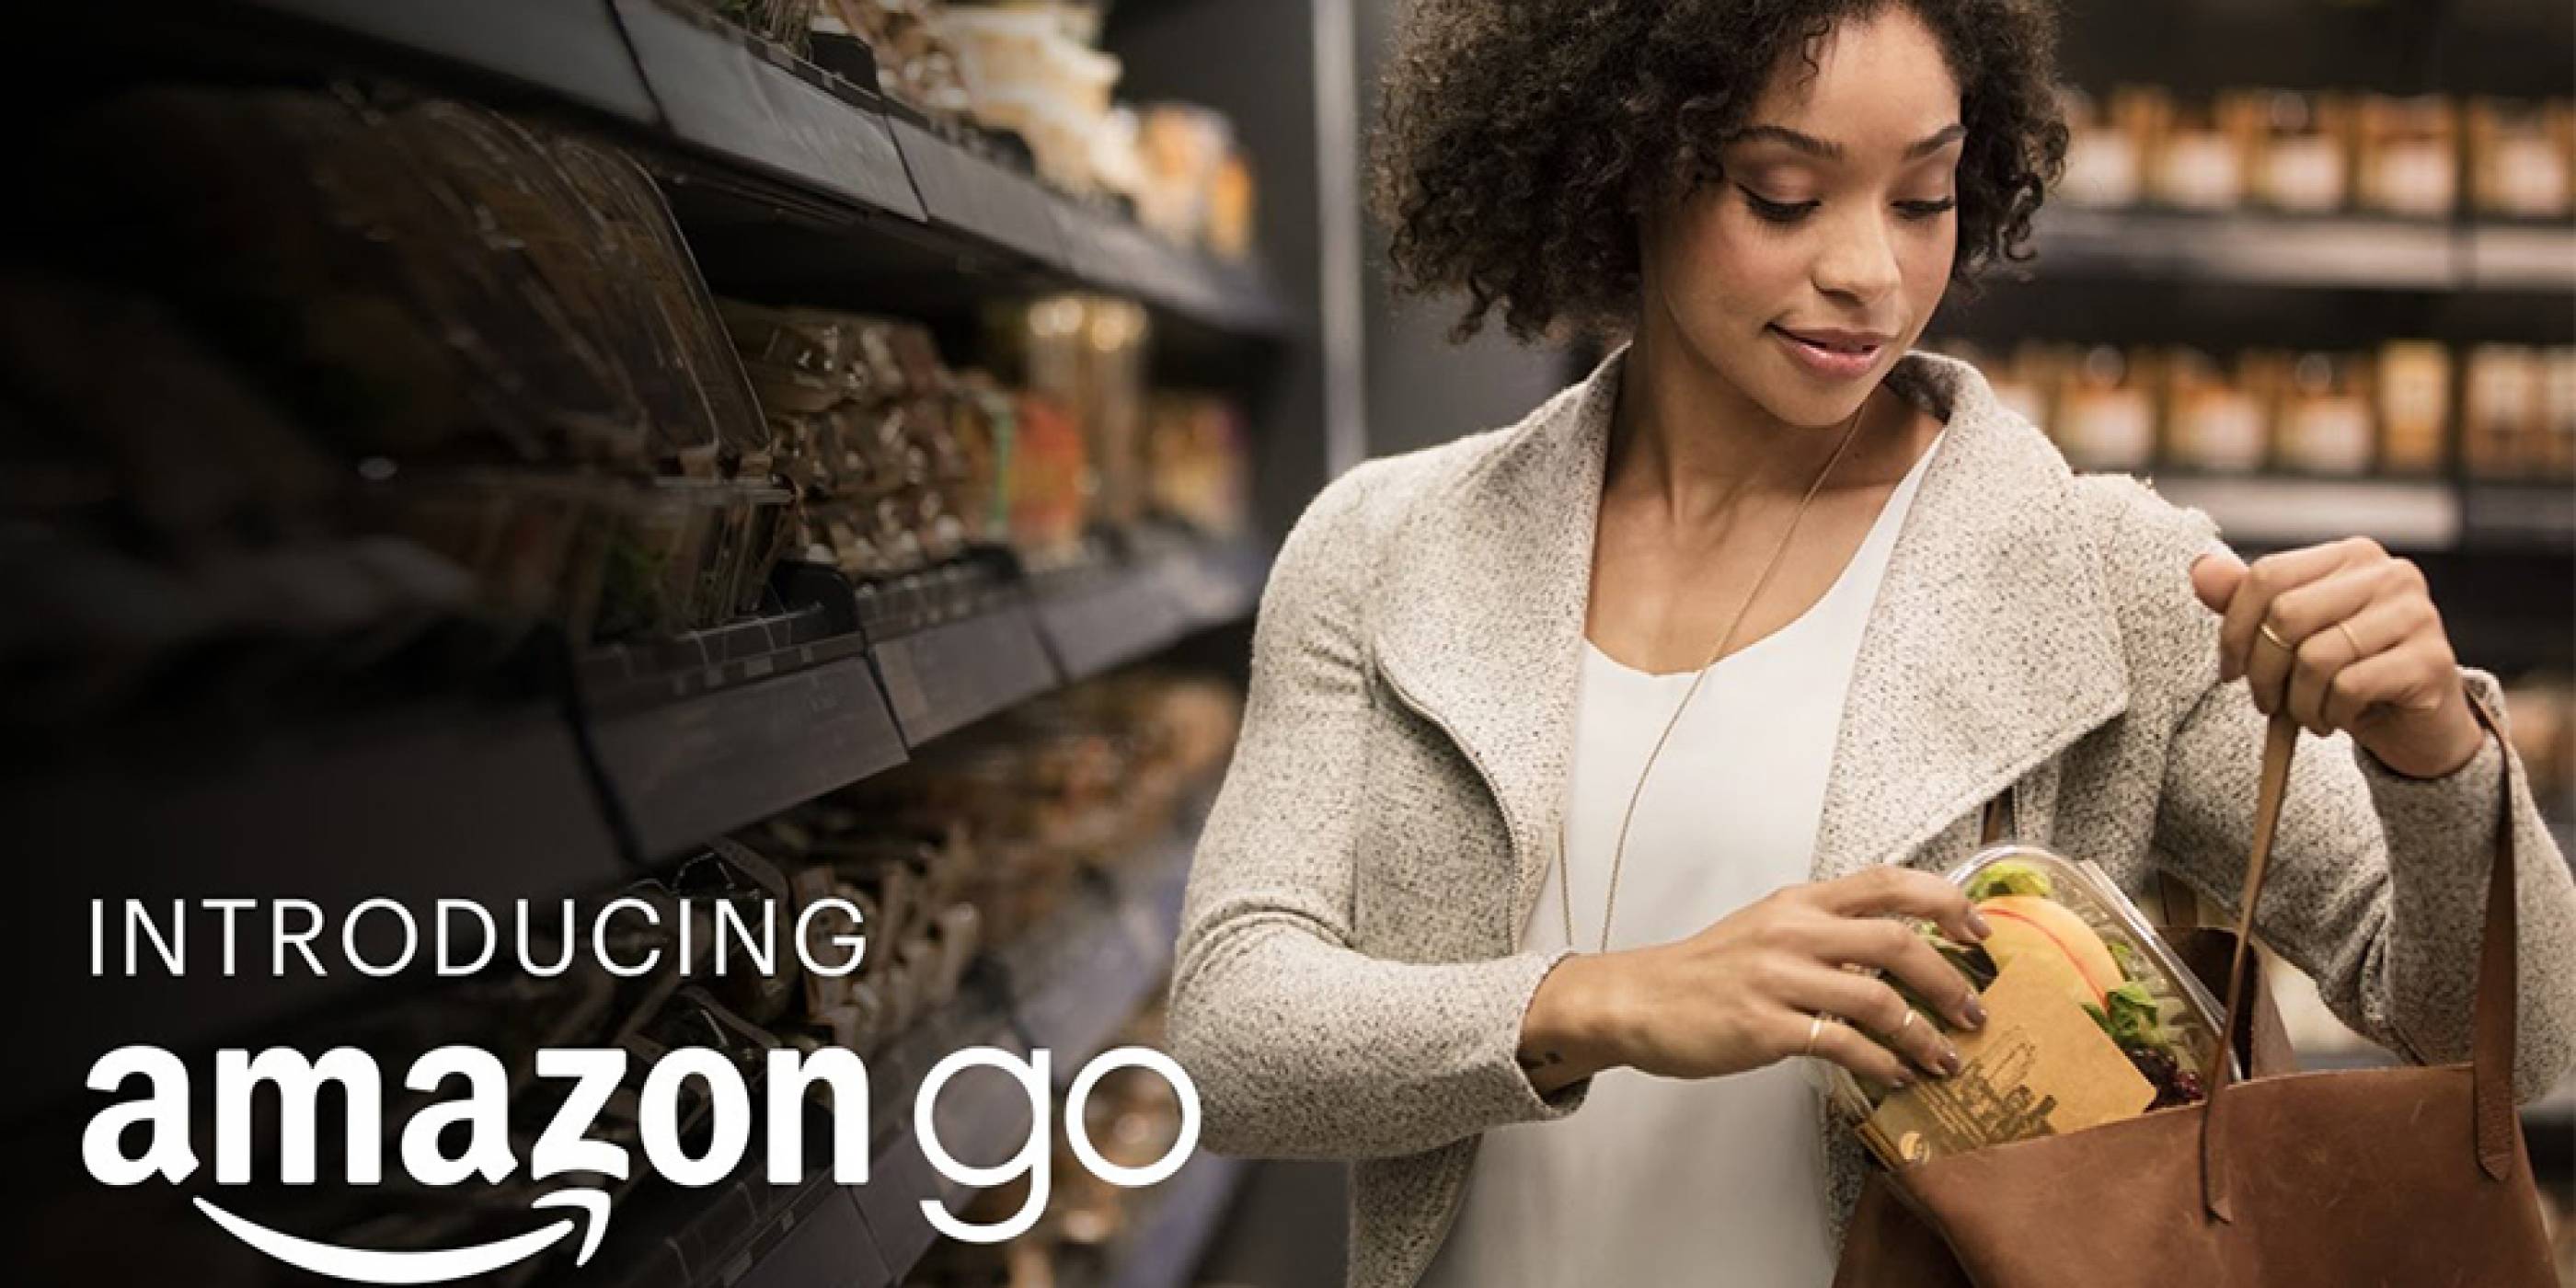 Amazon се подготвя за официалното пускане на веригата си магазини Amazon Go